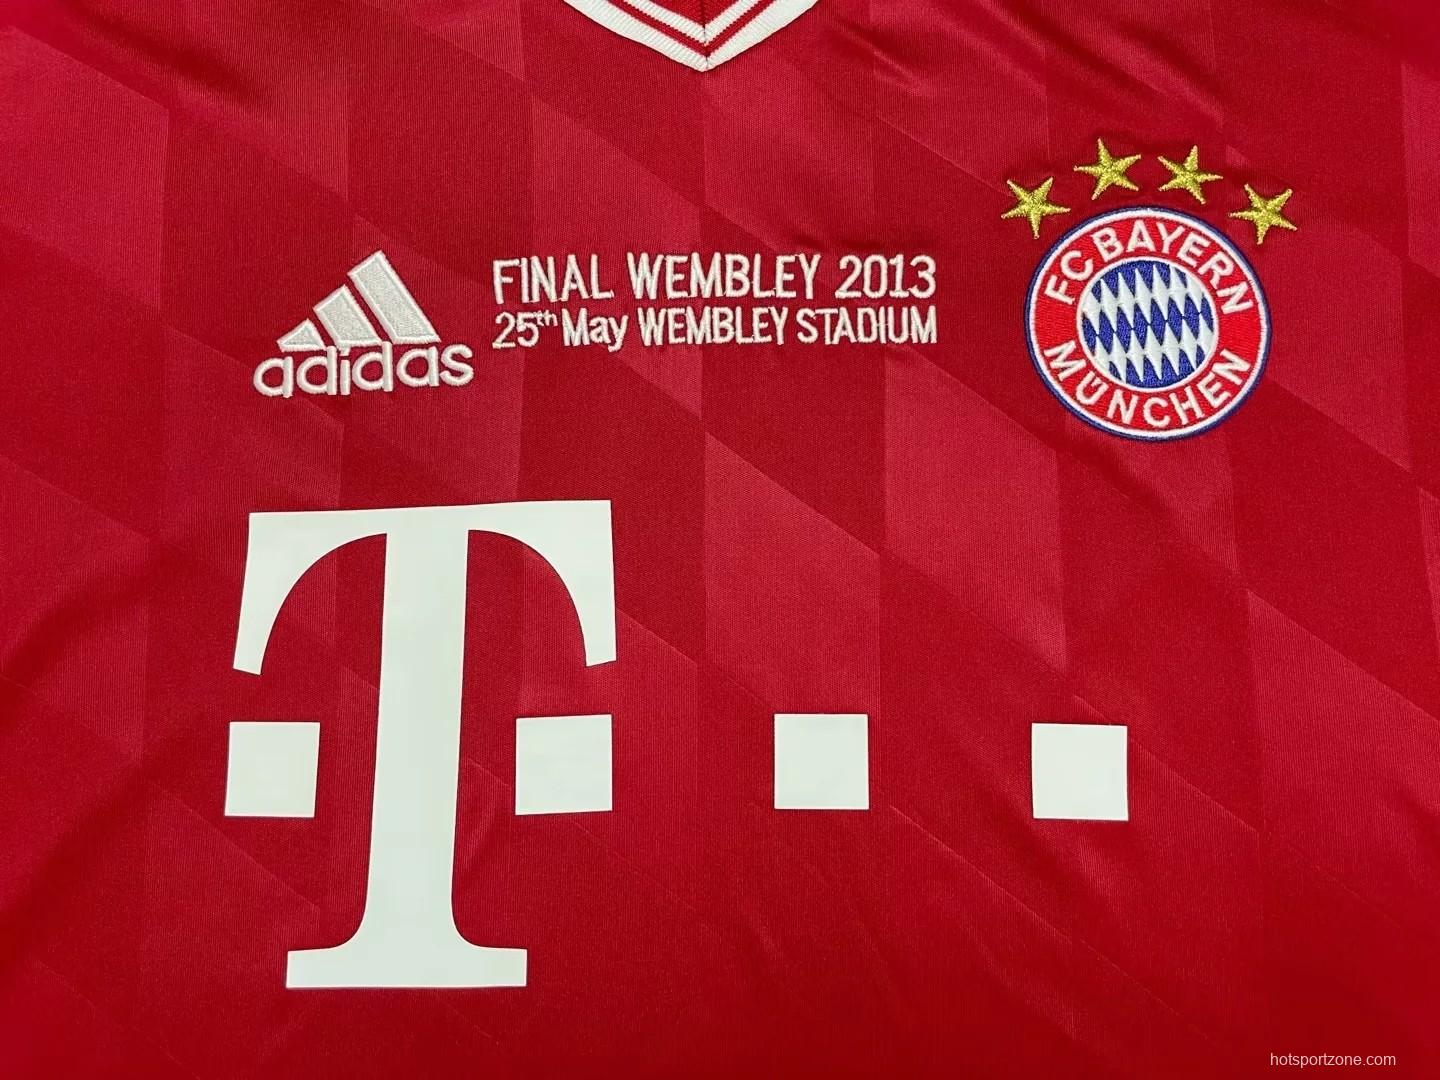 Retro 13/14 Bayern Munich Home Final Wembley Jersey